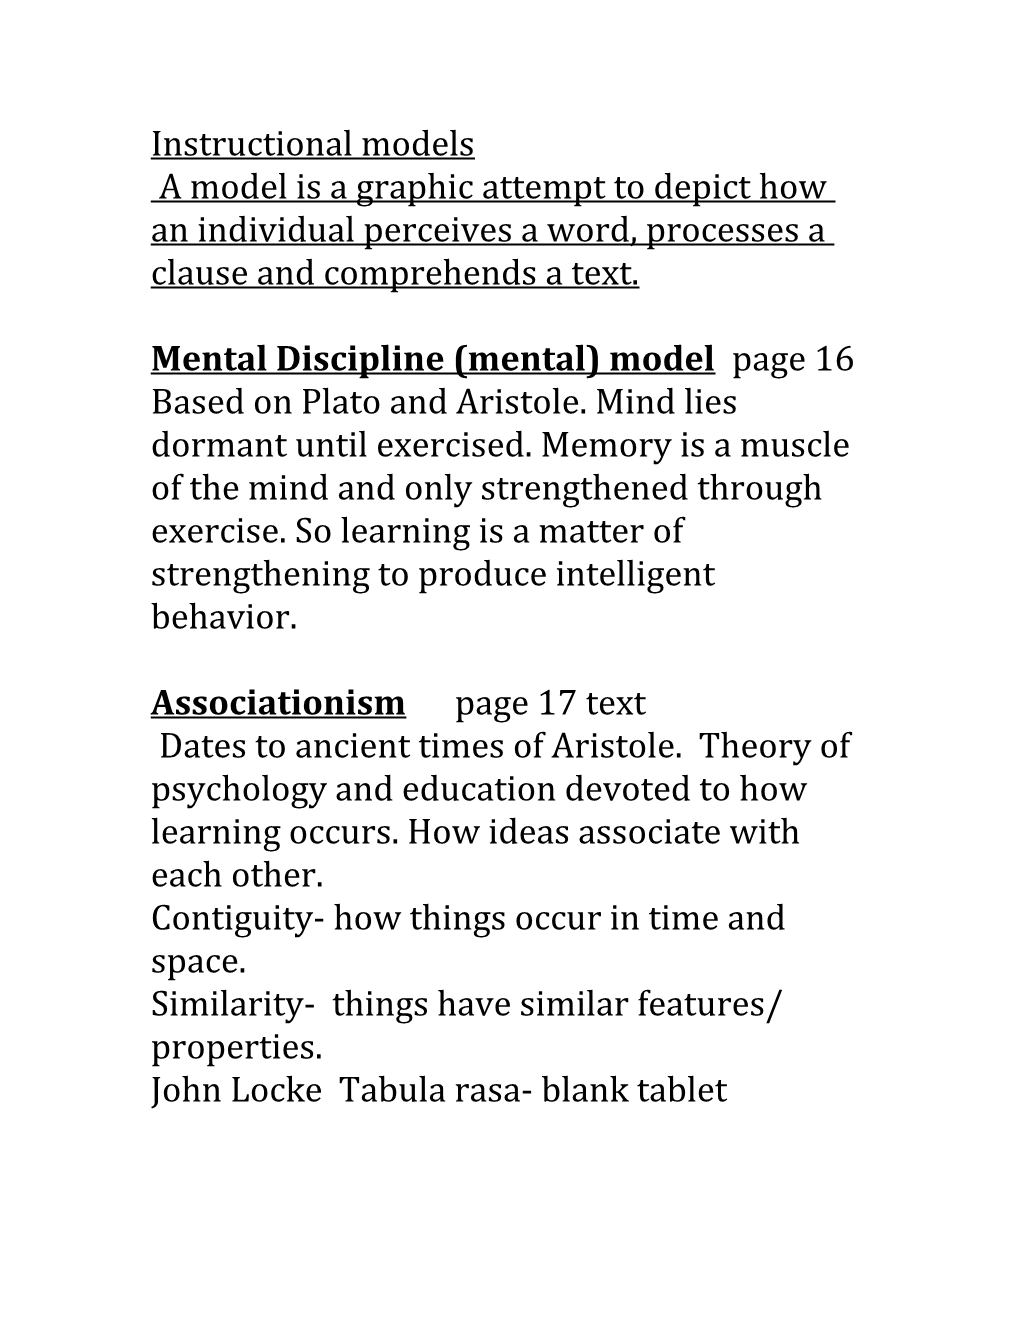 Mental Discipline (Mental) Model Page 16